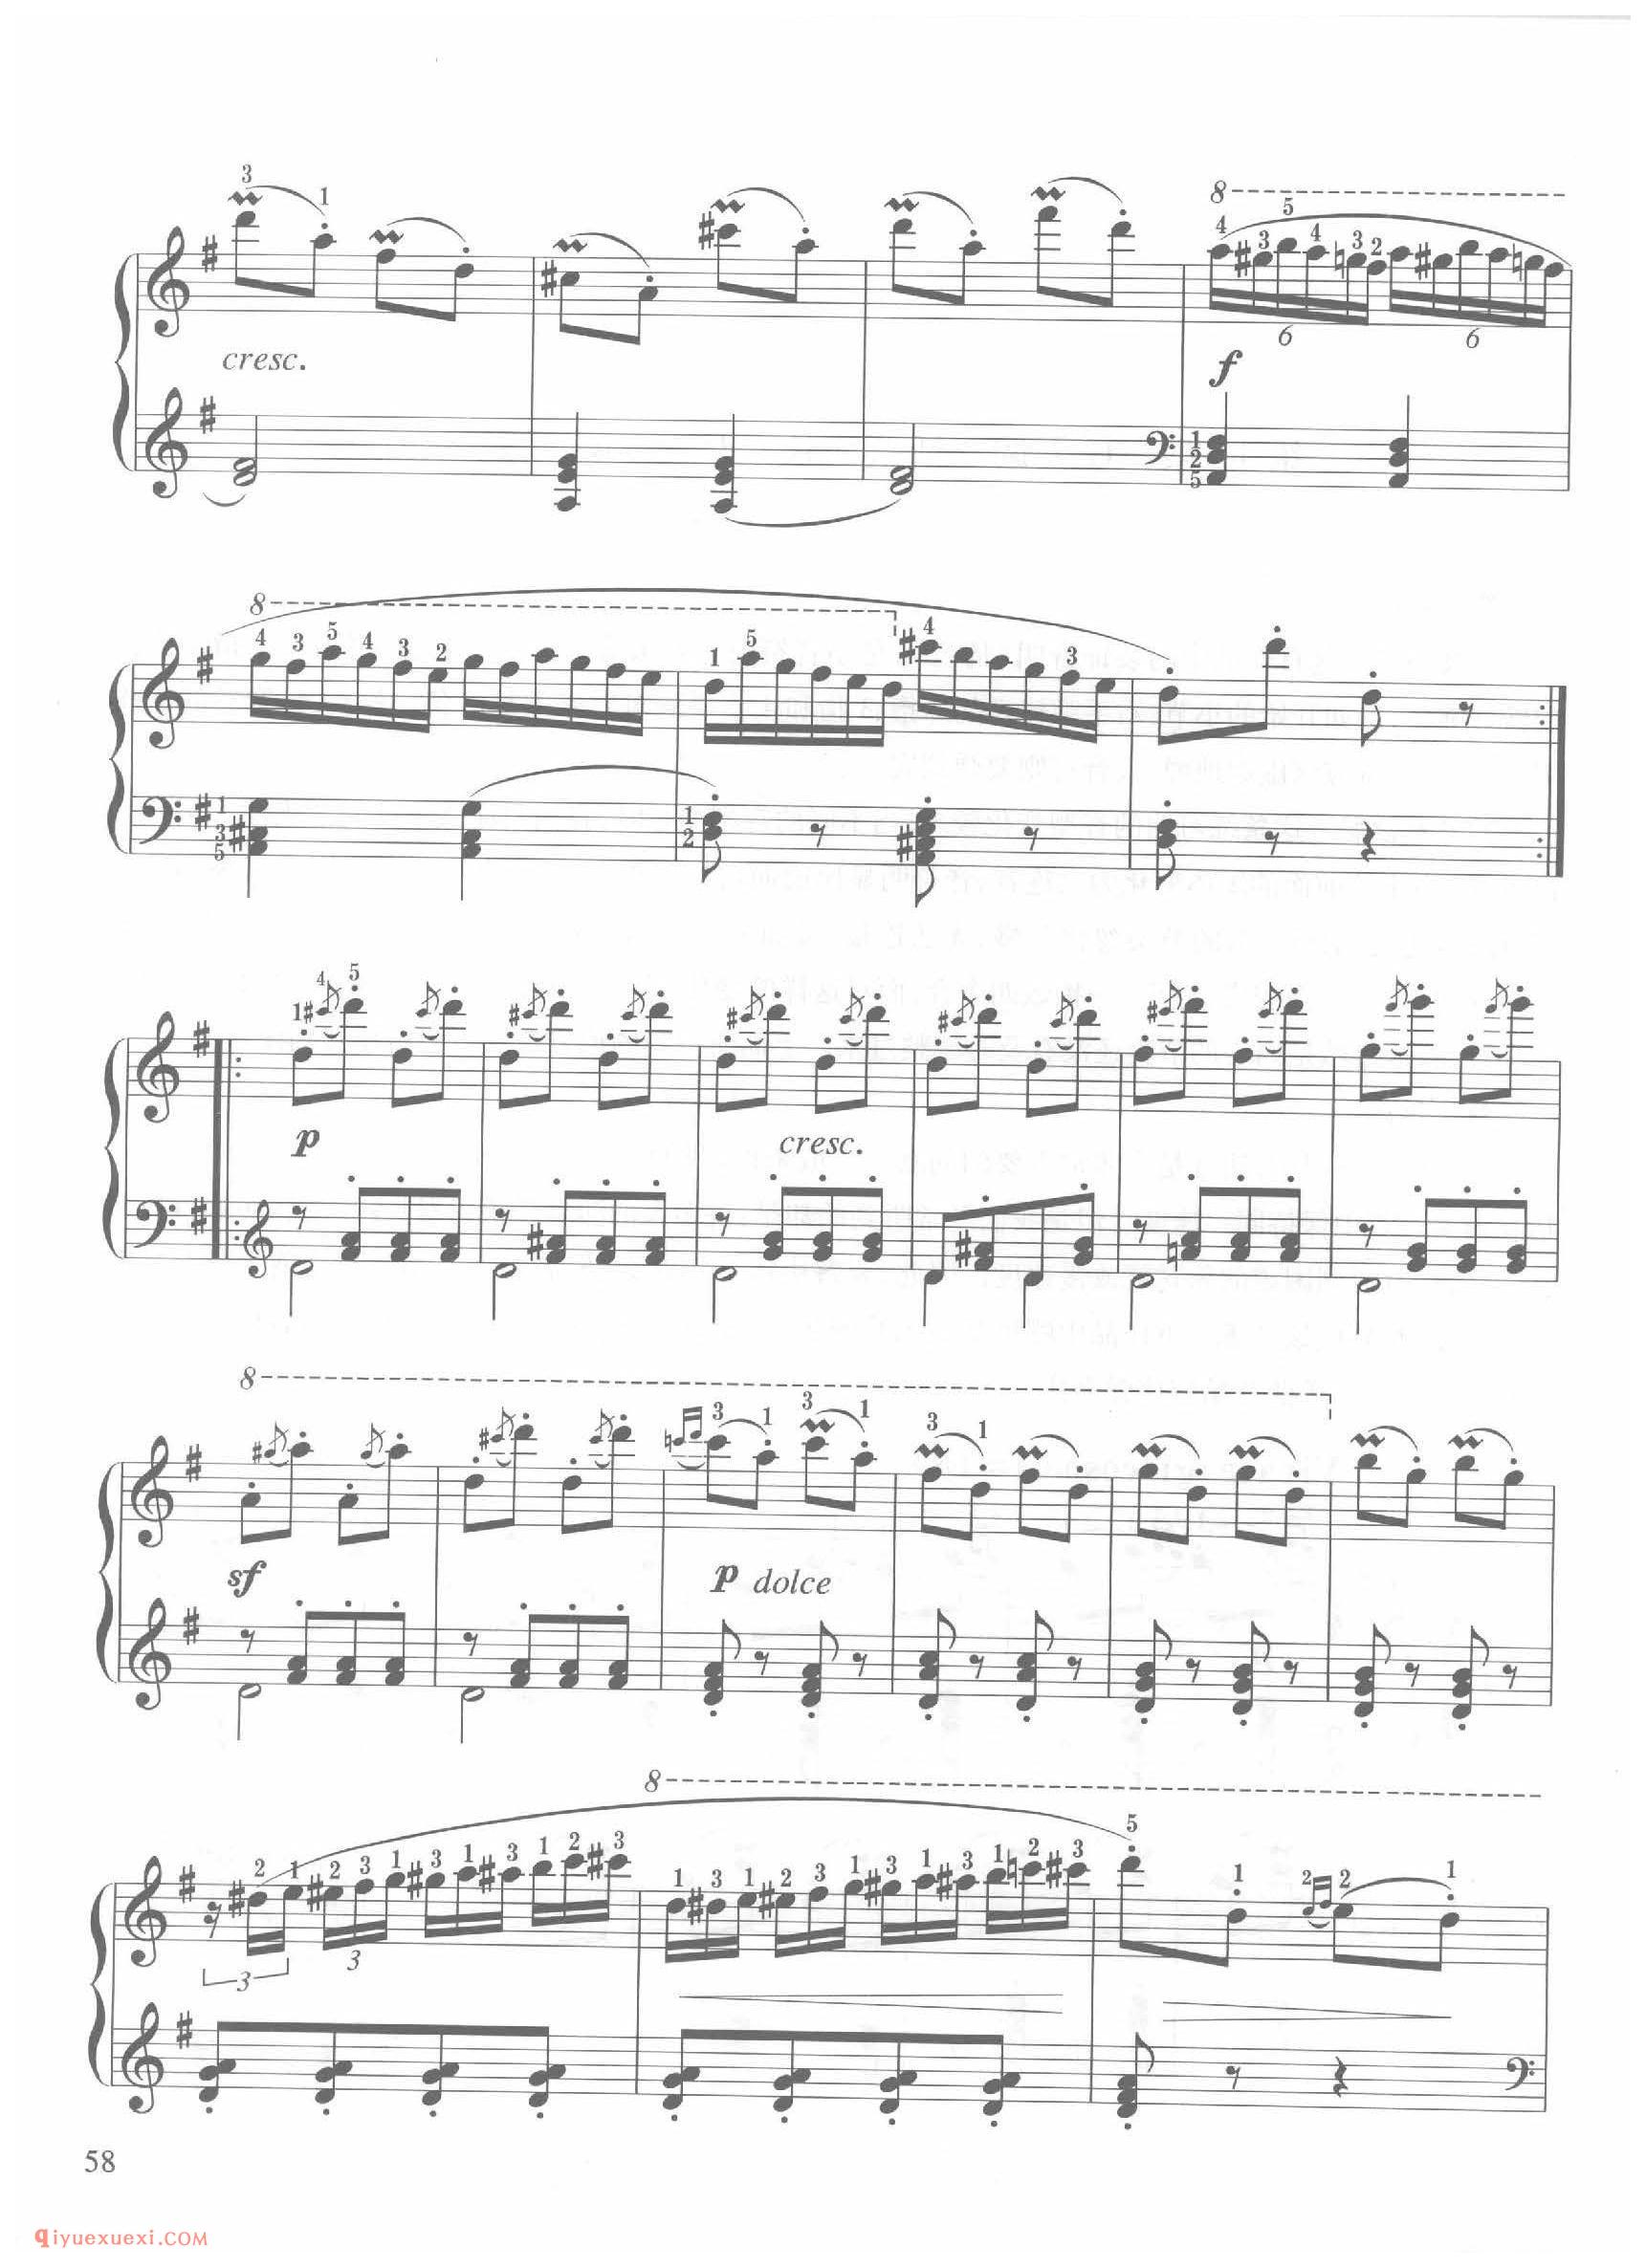 第17条G大调活跃而快乐地( Vivace giocoso)车尔尼钢琴作品849_常桦讲解 注释